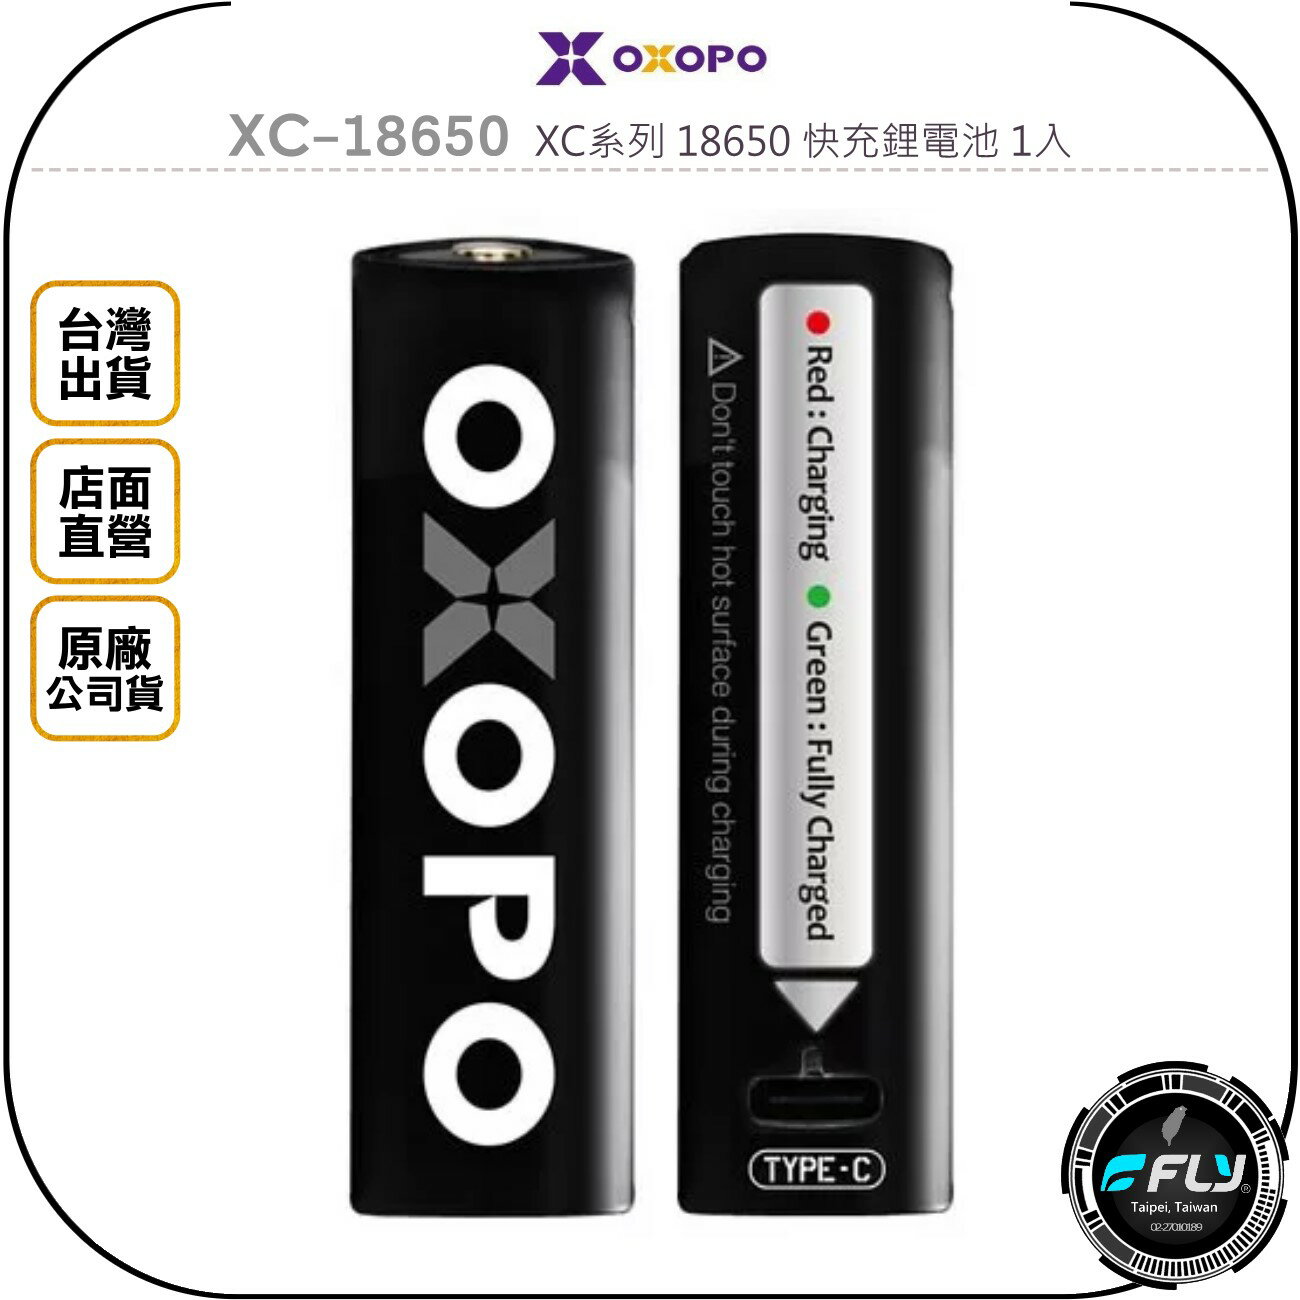 《飛翔無線3C》OXOPO XC-18650 XC系列 18650 快充鋰電池 1入◉公司貨◉3.6V◉TYPE-C充電